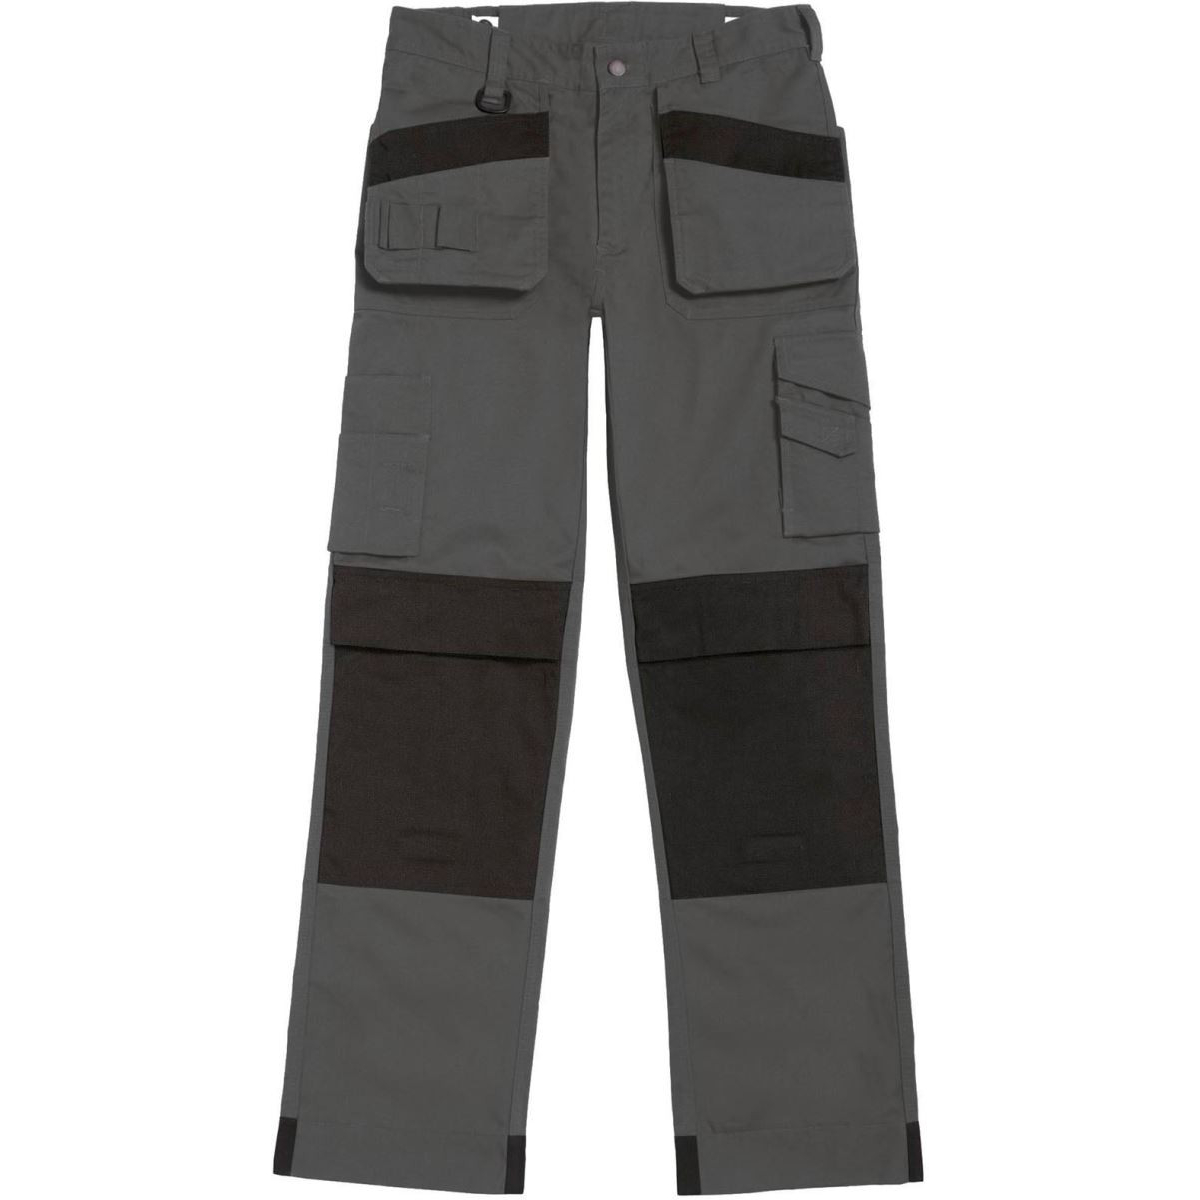 Pánské pracovní kalhoty B&C Performance Pro s multi-kapsami - šedé-černé, 44